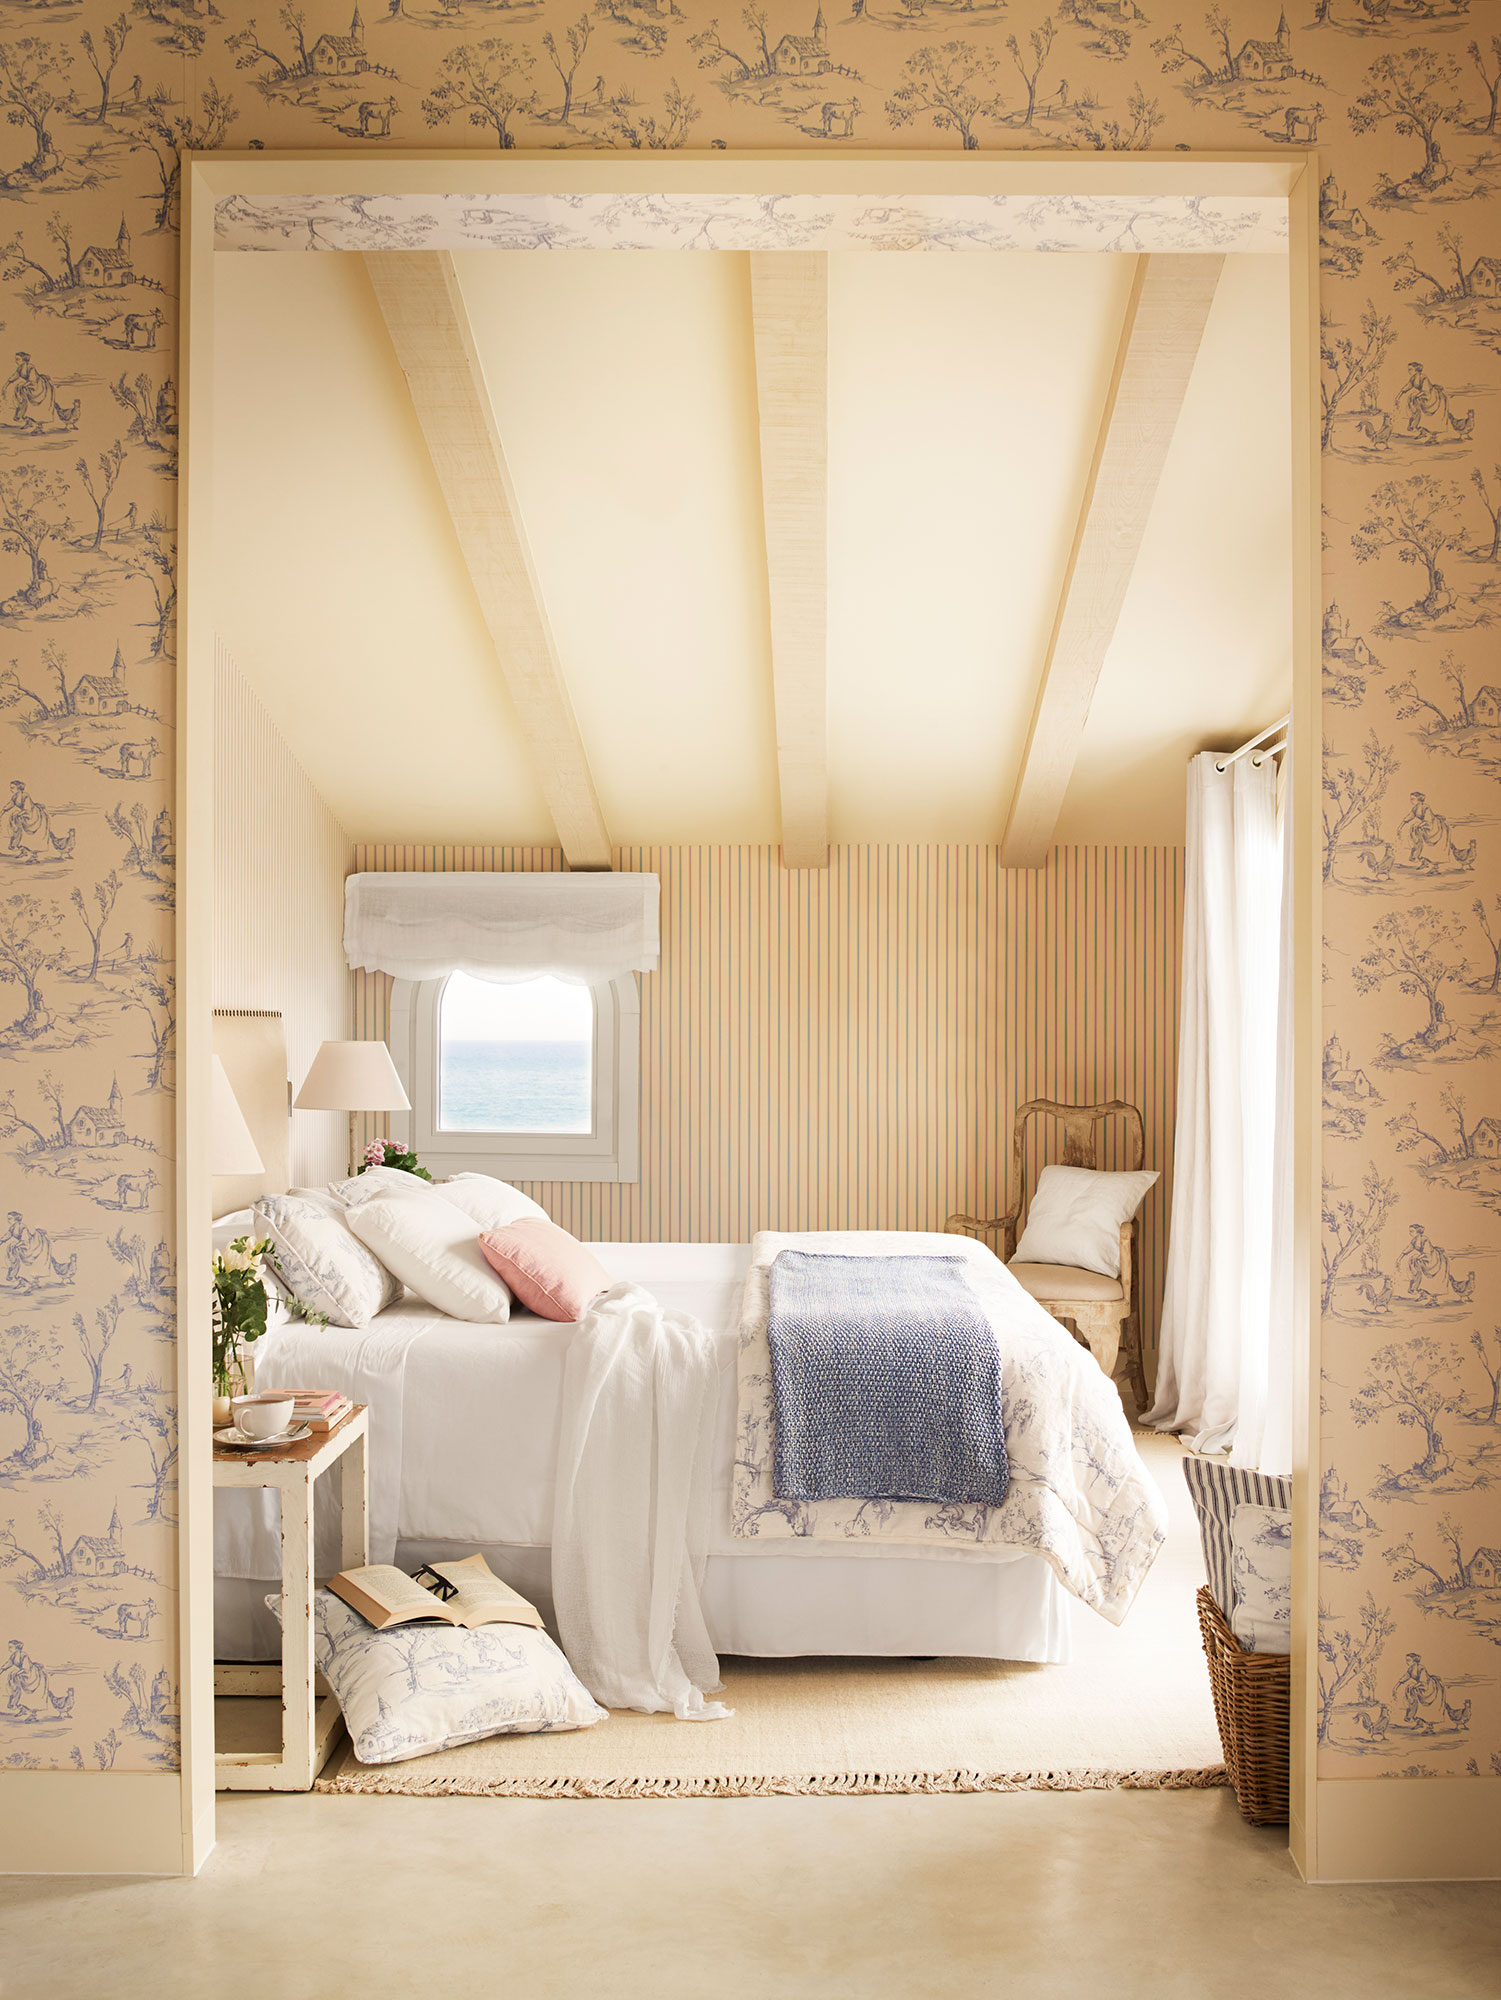 Dormitorio de verano con ropa de cama beige y papel pintado de rayas.  